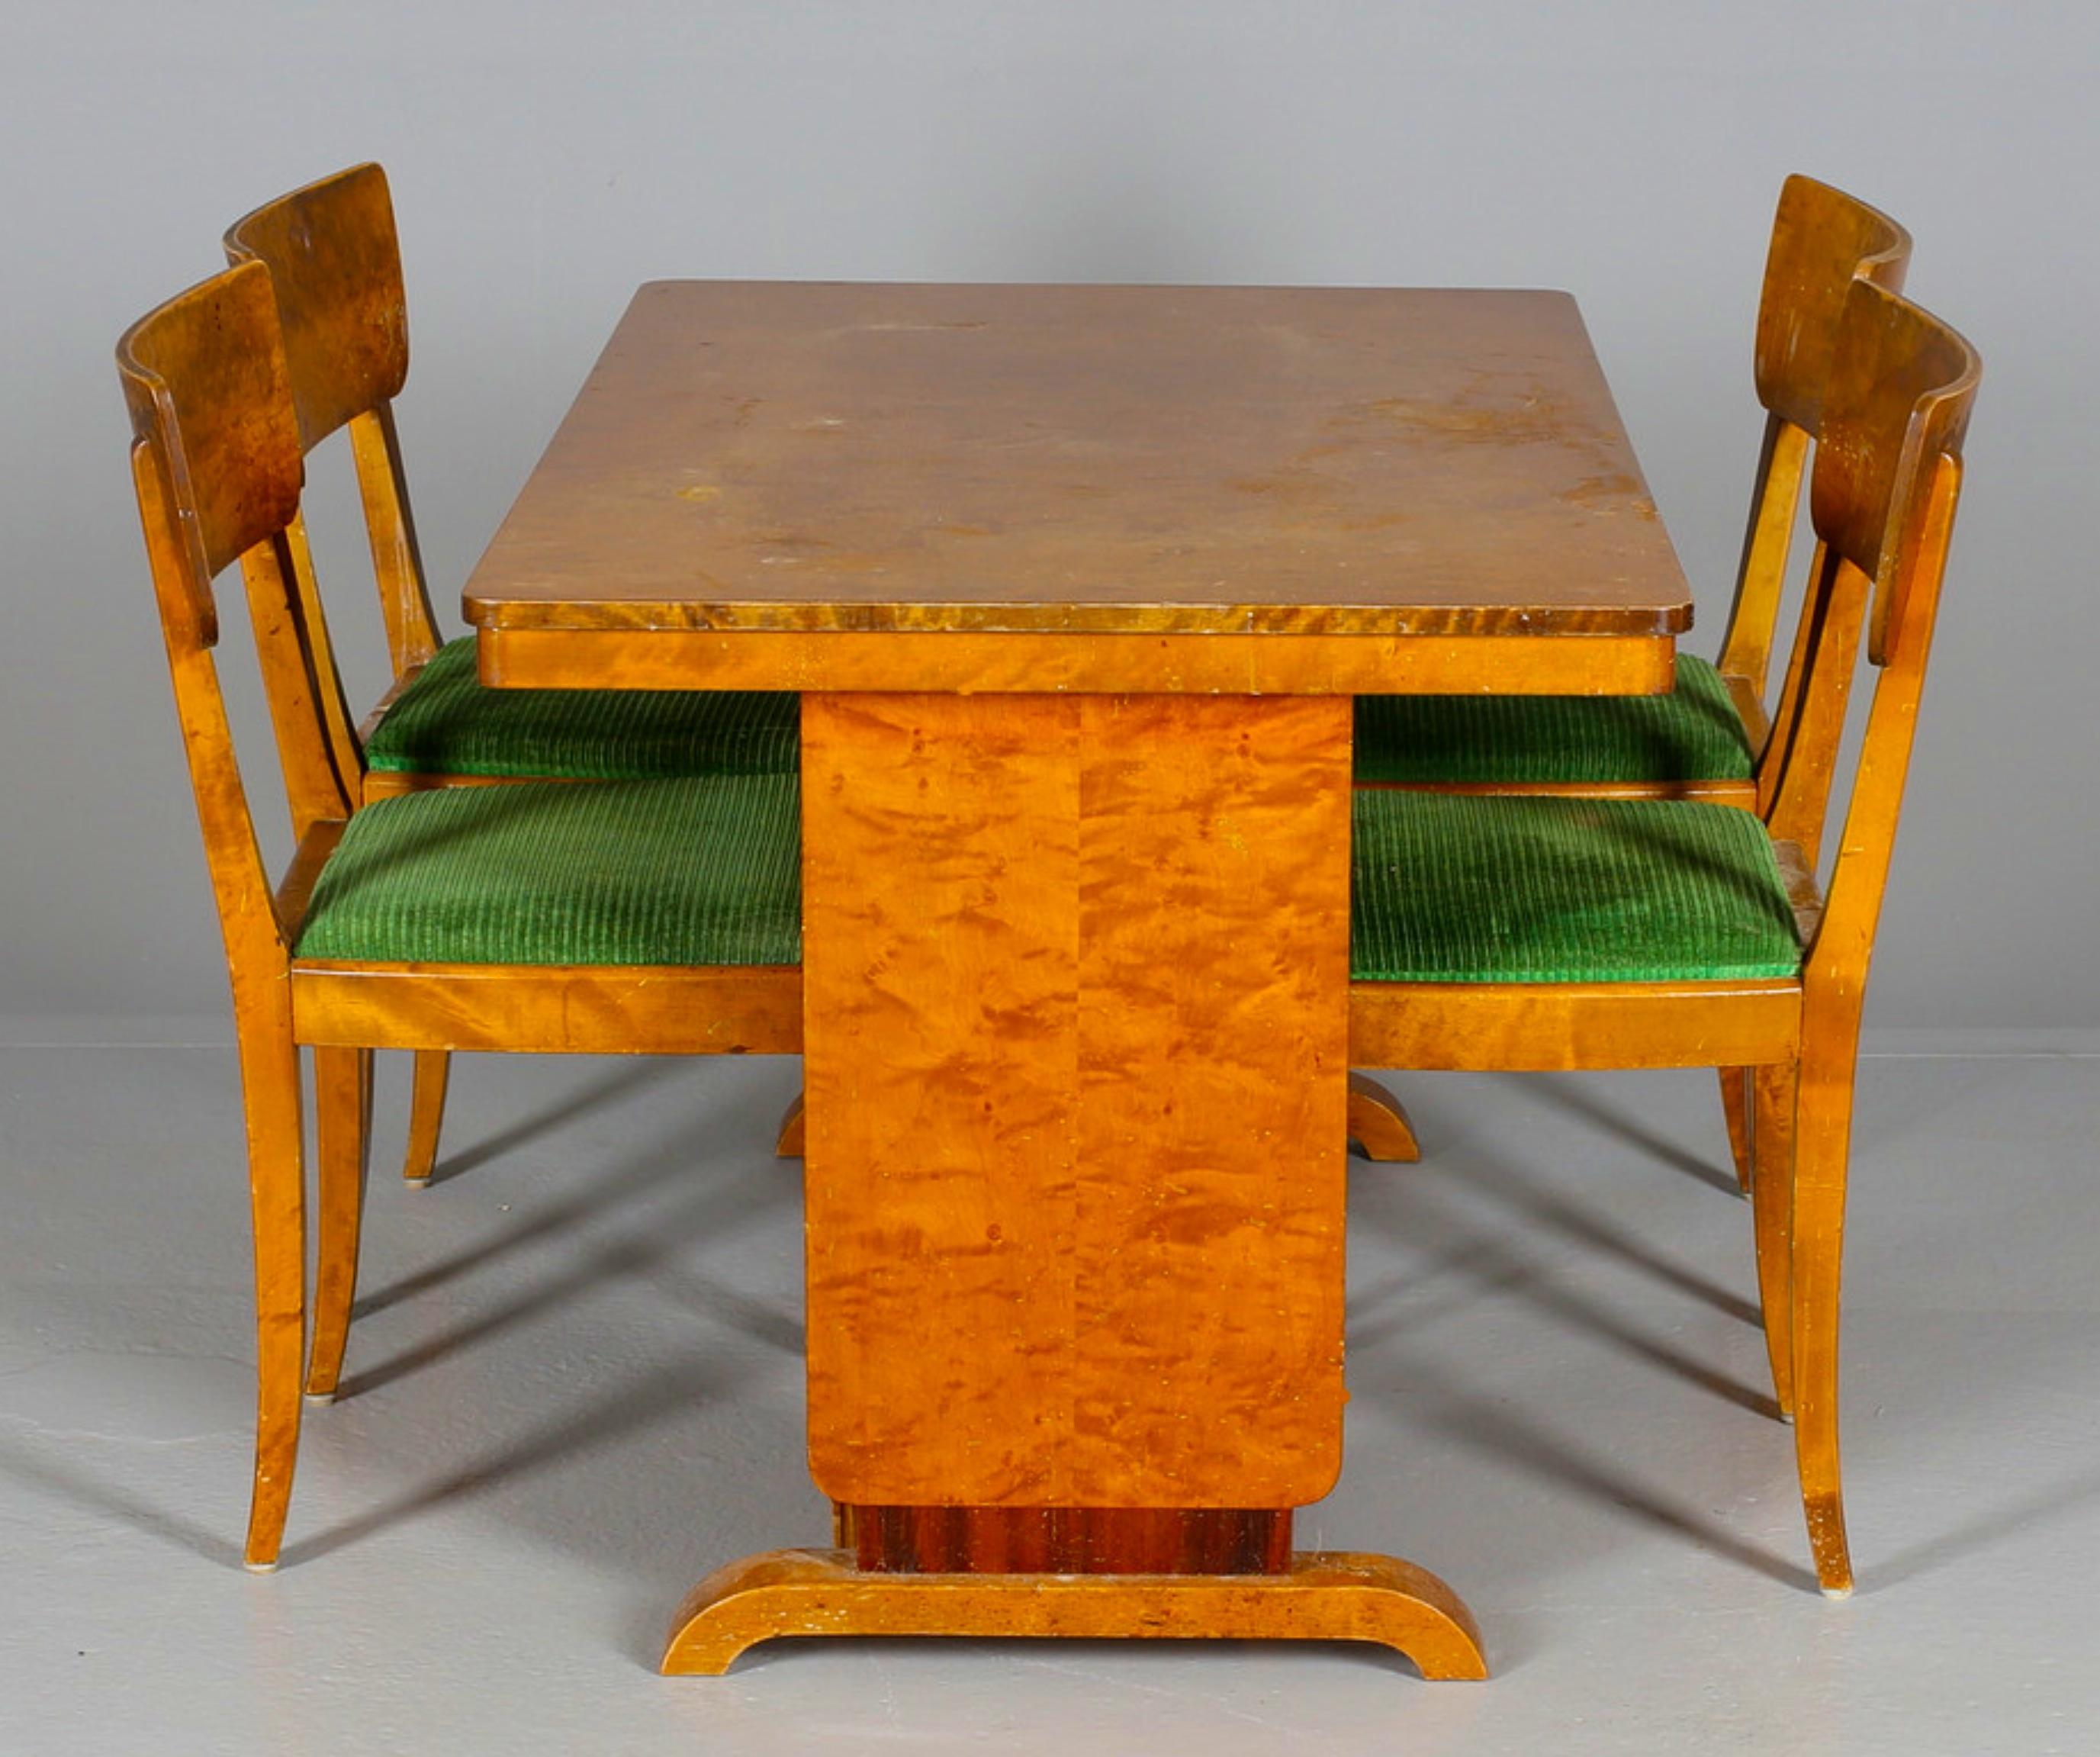 Ensemble de 4 chaises de salle à manger d'origine suédoise Art déco, très inhabituel, avec une finition polie à la française et de jolis détails.

Dimensions : Environ 45 cm de largeur x 40 cm de profondeur x 81 cm de hauteur.

Ils sont dotés